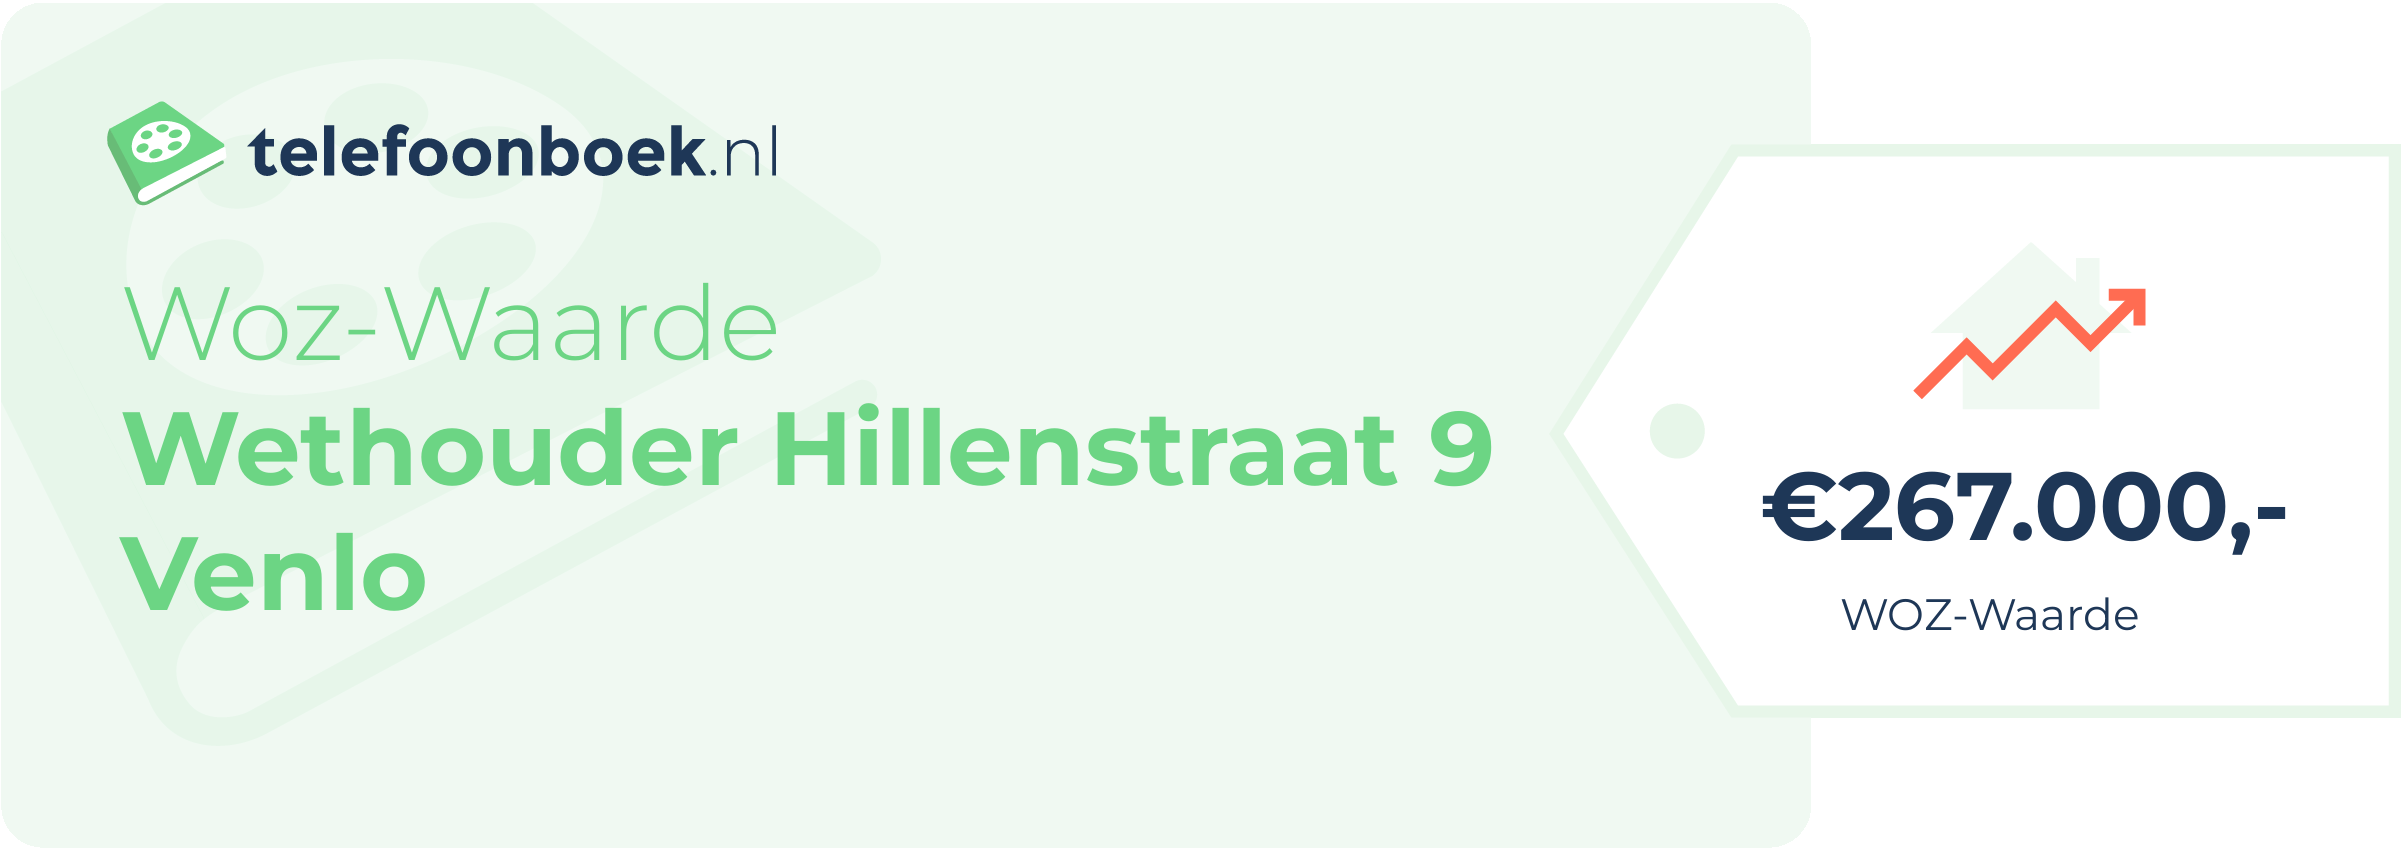 WOZ-waarde Wethouder Hillenstraat 9 Venlo